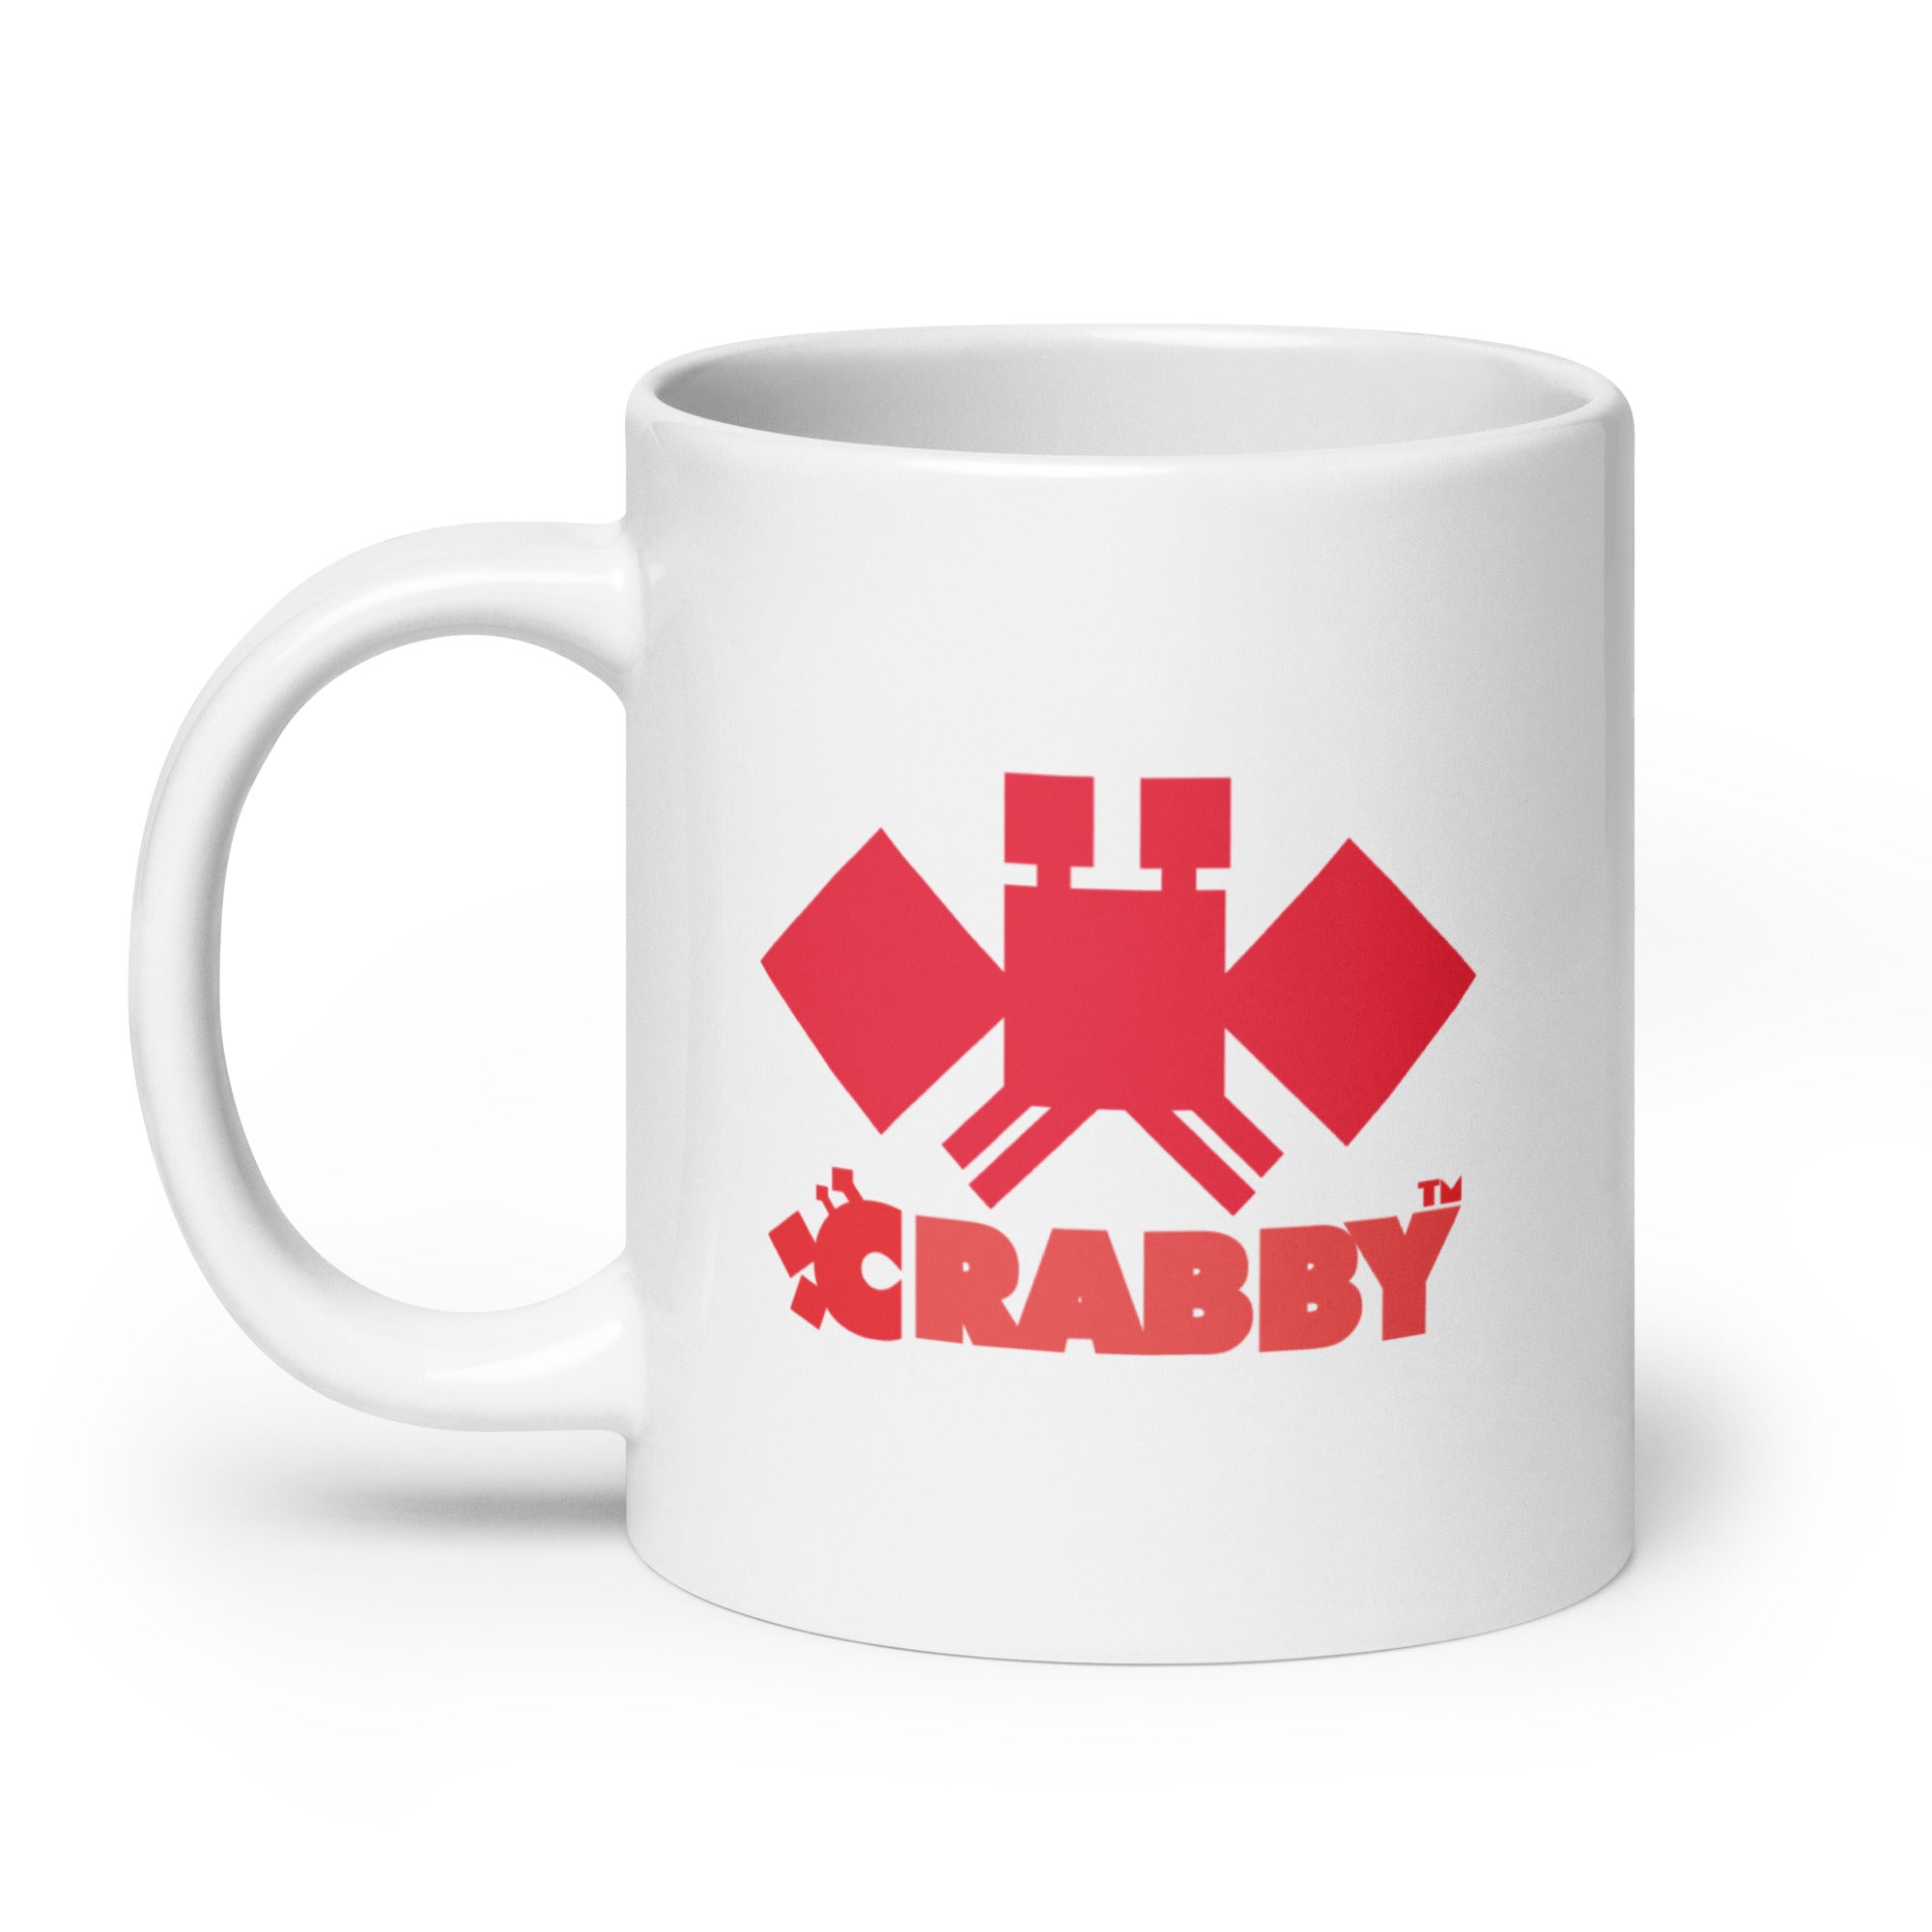 CRABBY Mug